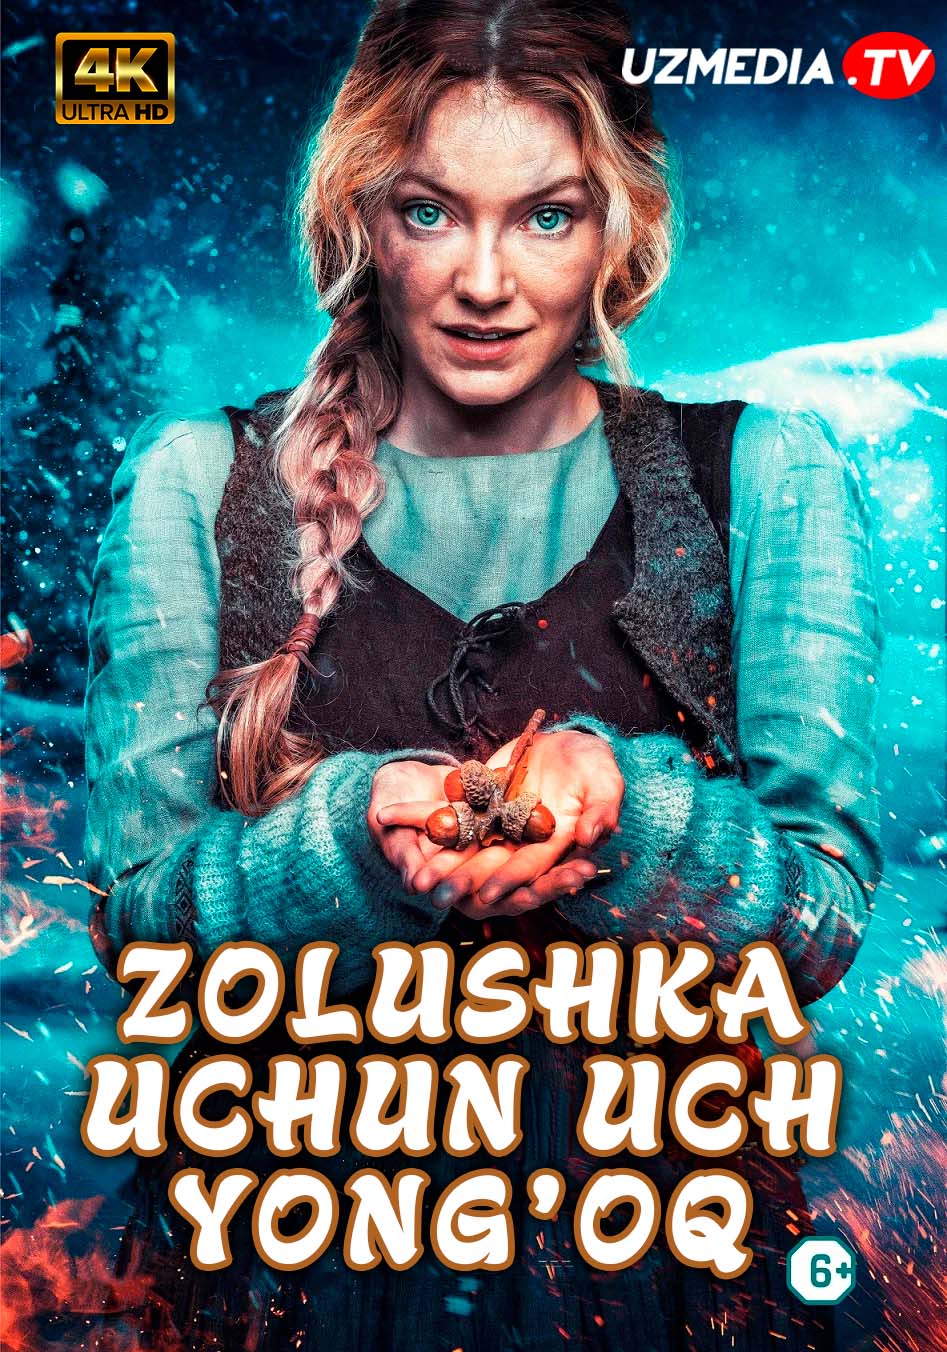 Sinderella / Zolushka uchun uch yong'oq Norvegiya filmi Uzbek tilida O'zbekcha 2022 tarjima kino 4K UHD skachat